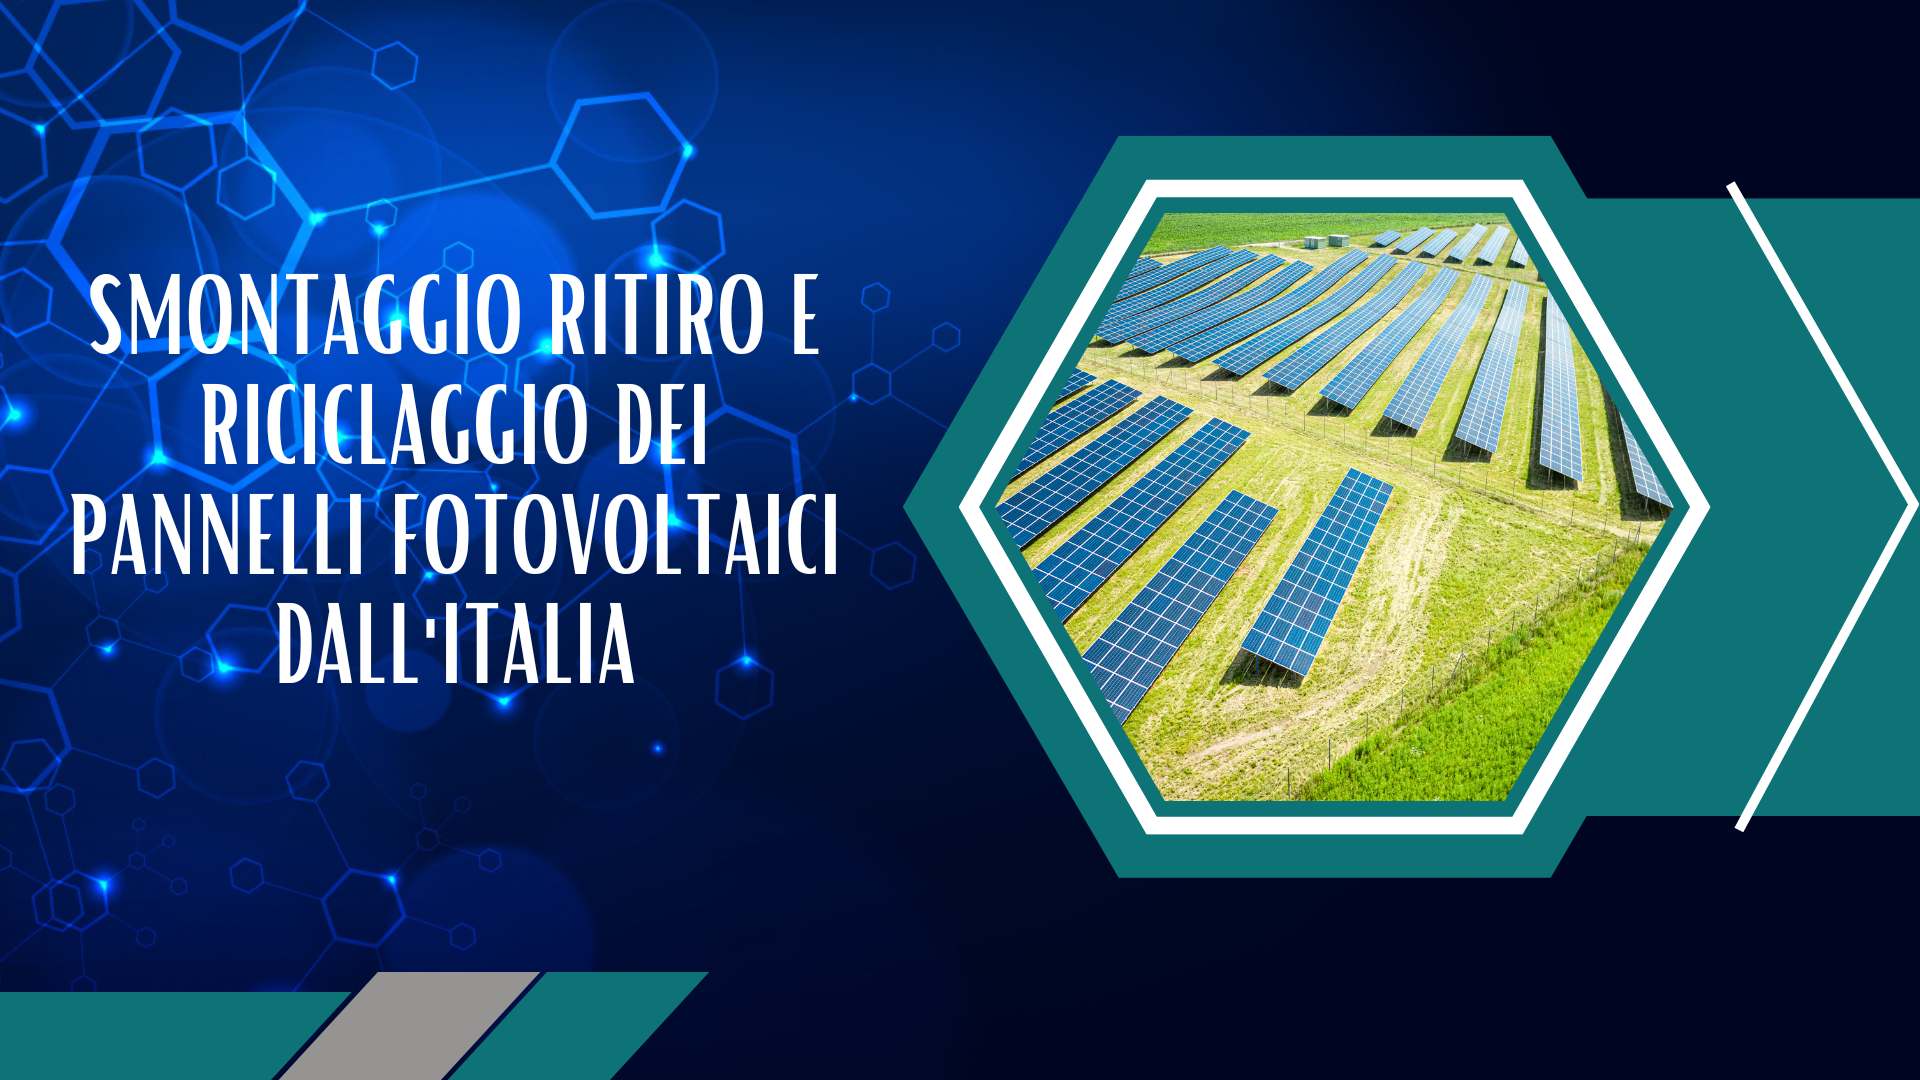 Smontaggio ritiro e riciclaggio dei pannelli fotovoltaici dall'Italia